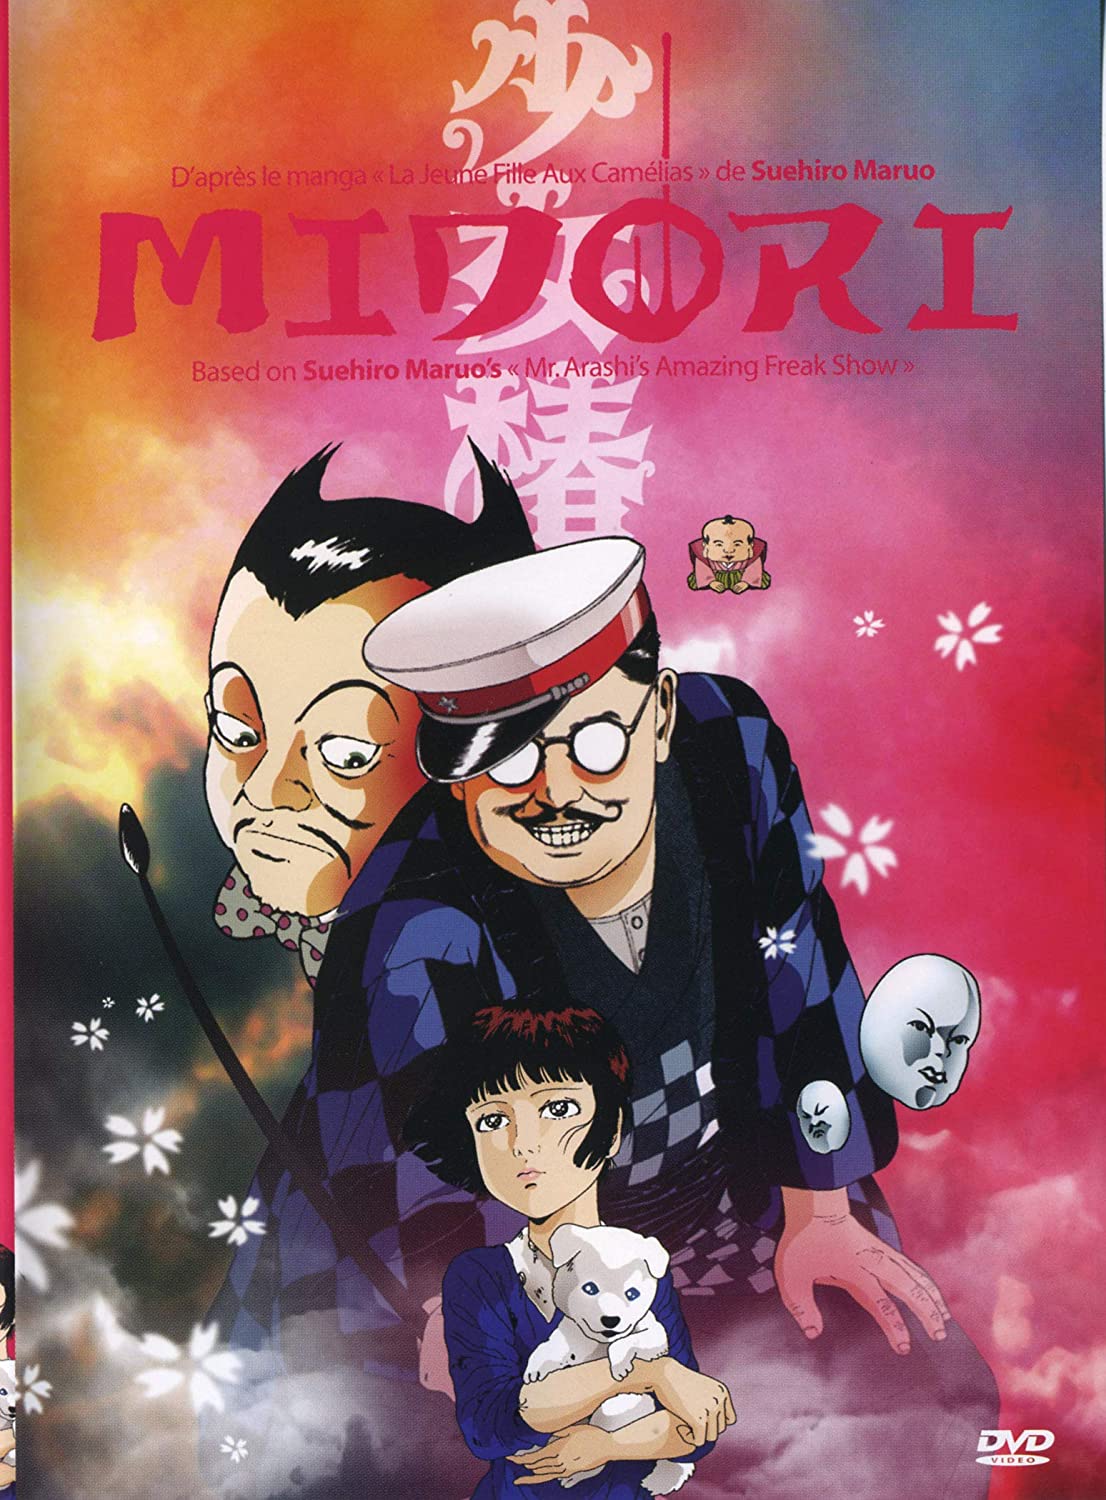 Midori (1992)